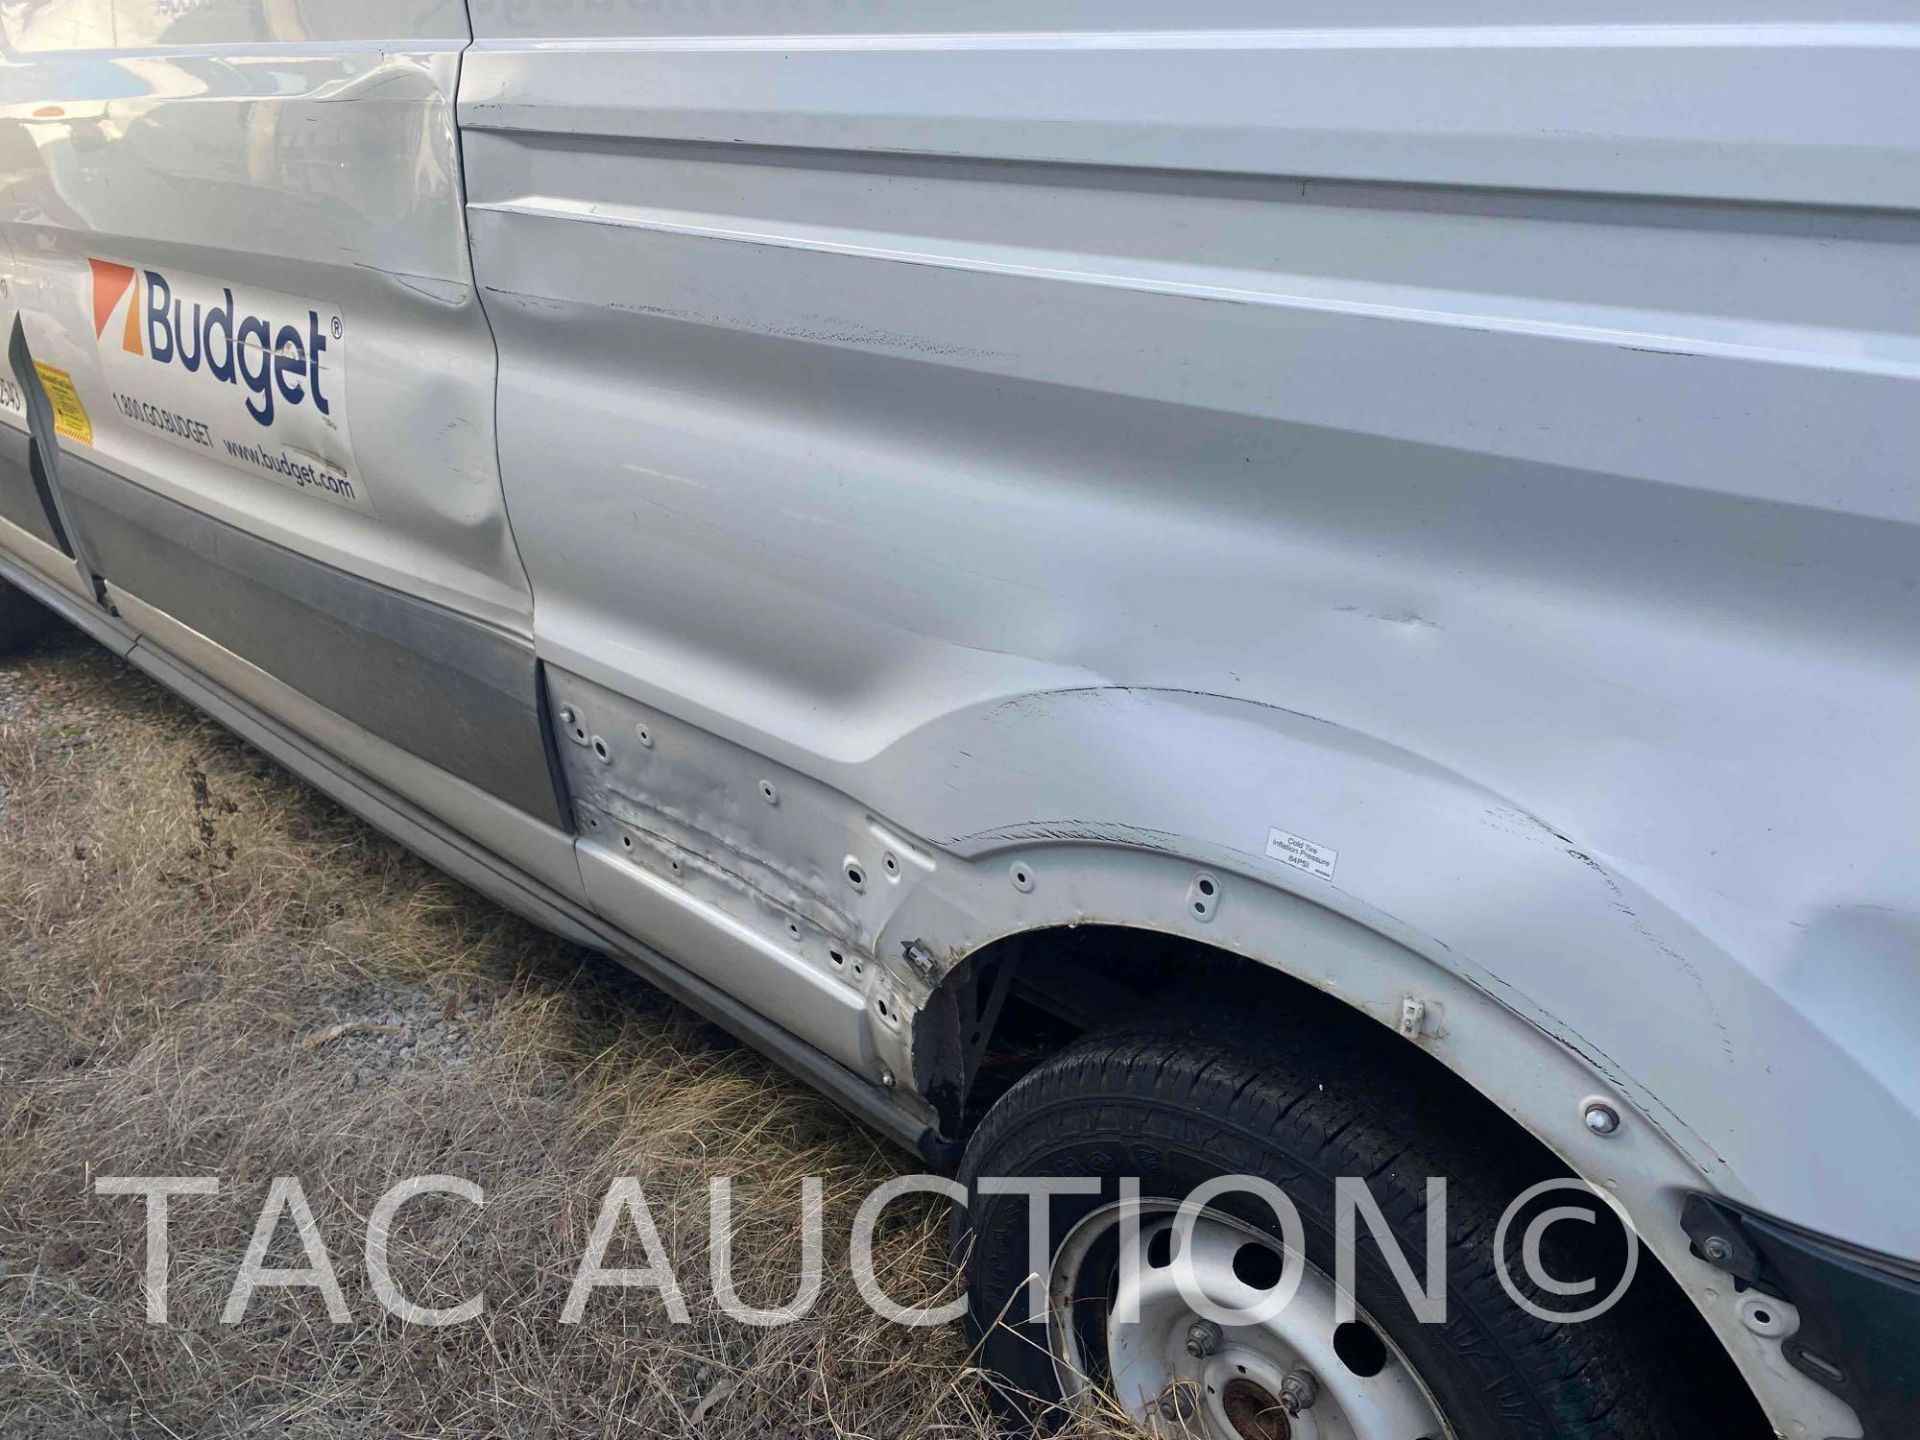 2019 Ford Transit 150 Cargo Van - Image 7 of 38